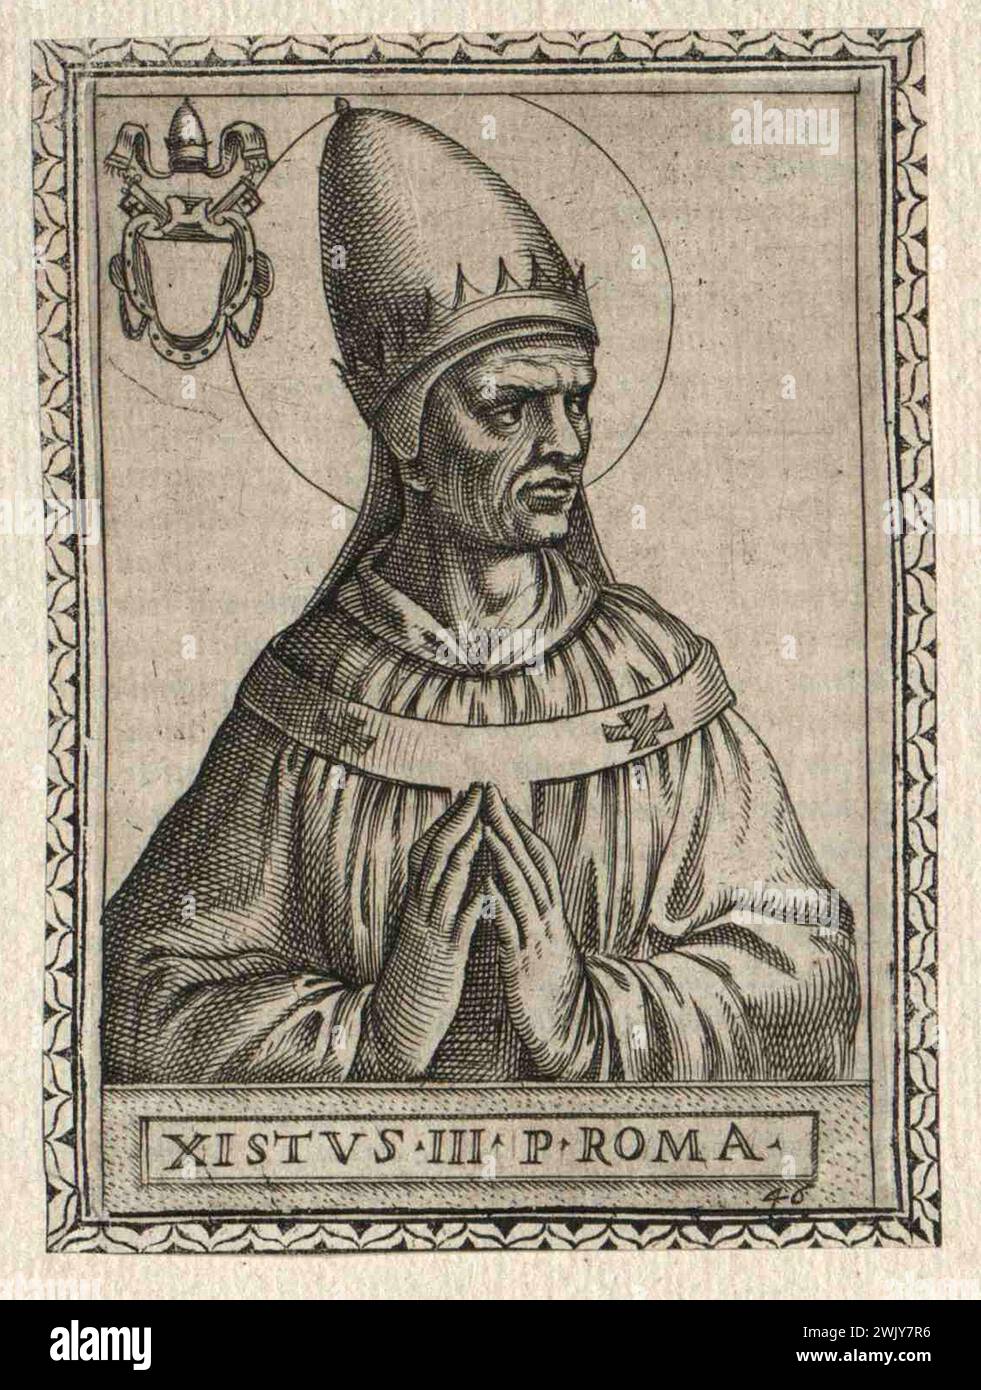 Portrait du XVIIe siècle du pape Sixte III qui fut pontife de AD432 à AD340. Il était le 44e pape. Banque D'Images